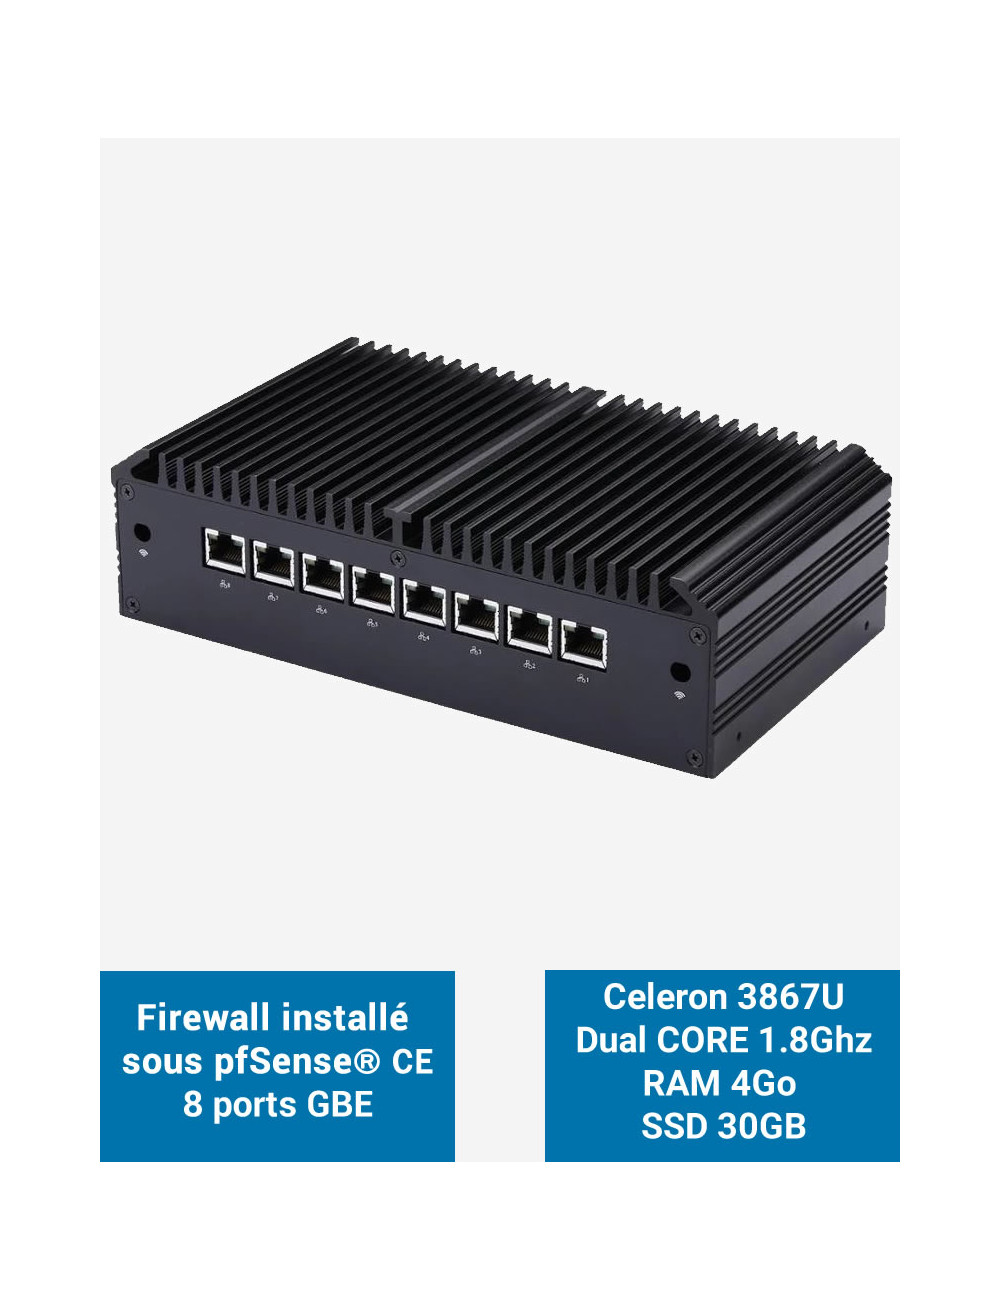 Firewall Q8x Celeron 3867U 8 ports GbE 4GB 30GB